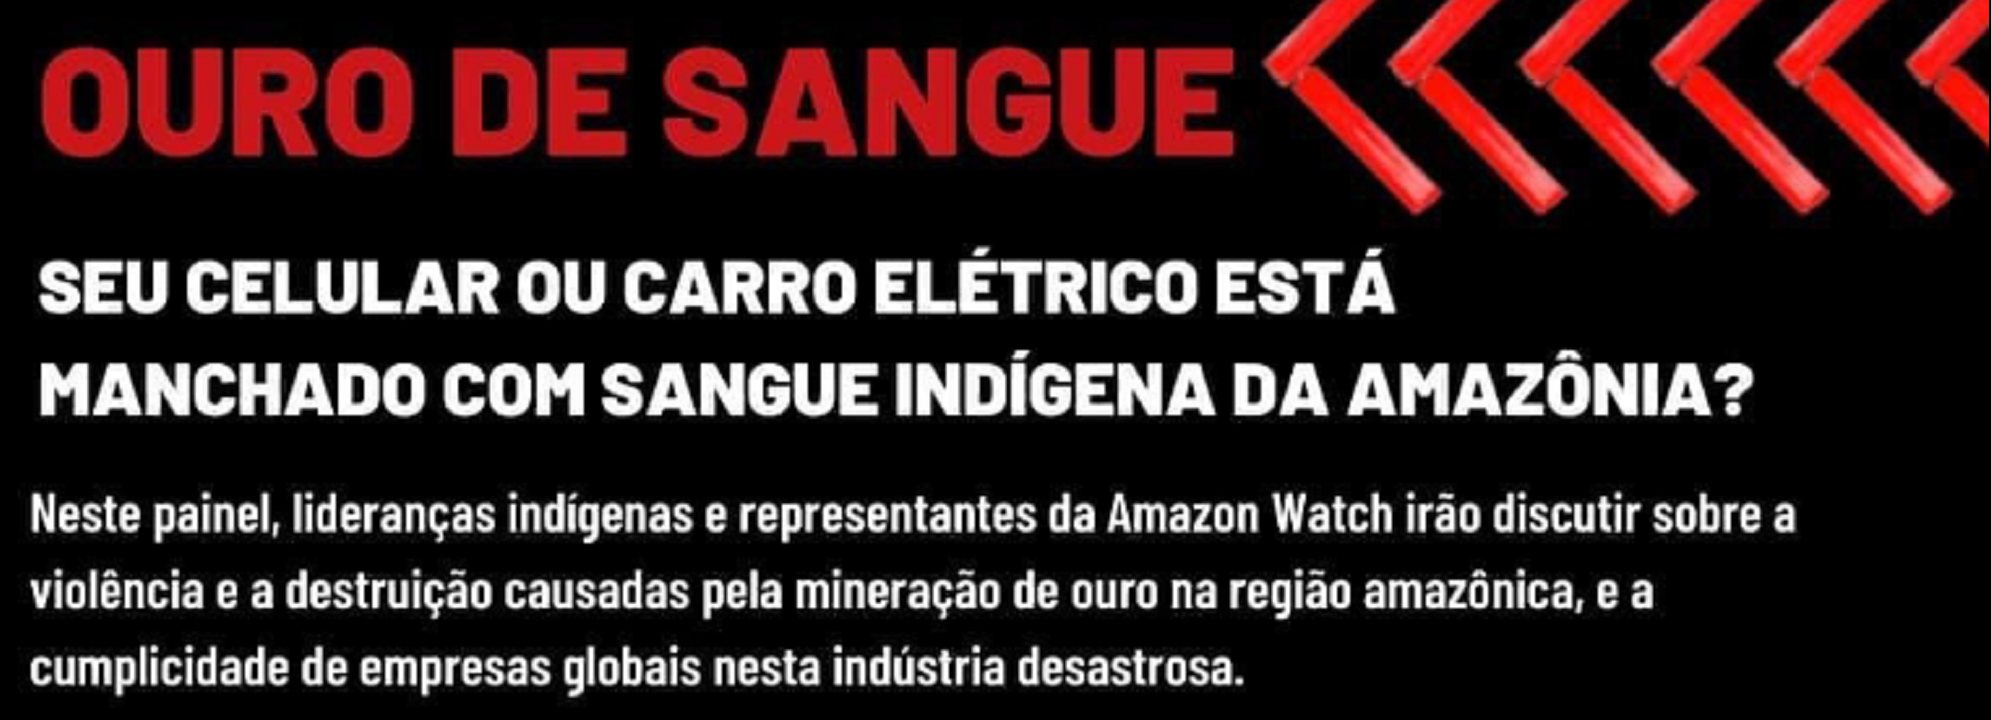 líderes indígenas brasileiros discutirão a violência e a destruição causadas pelo garimpo de ouro na Amazônia.